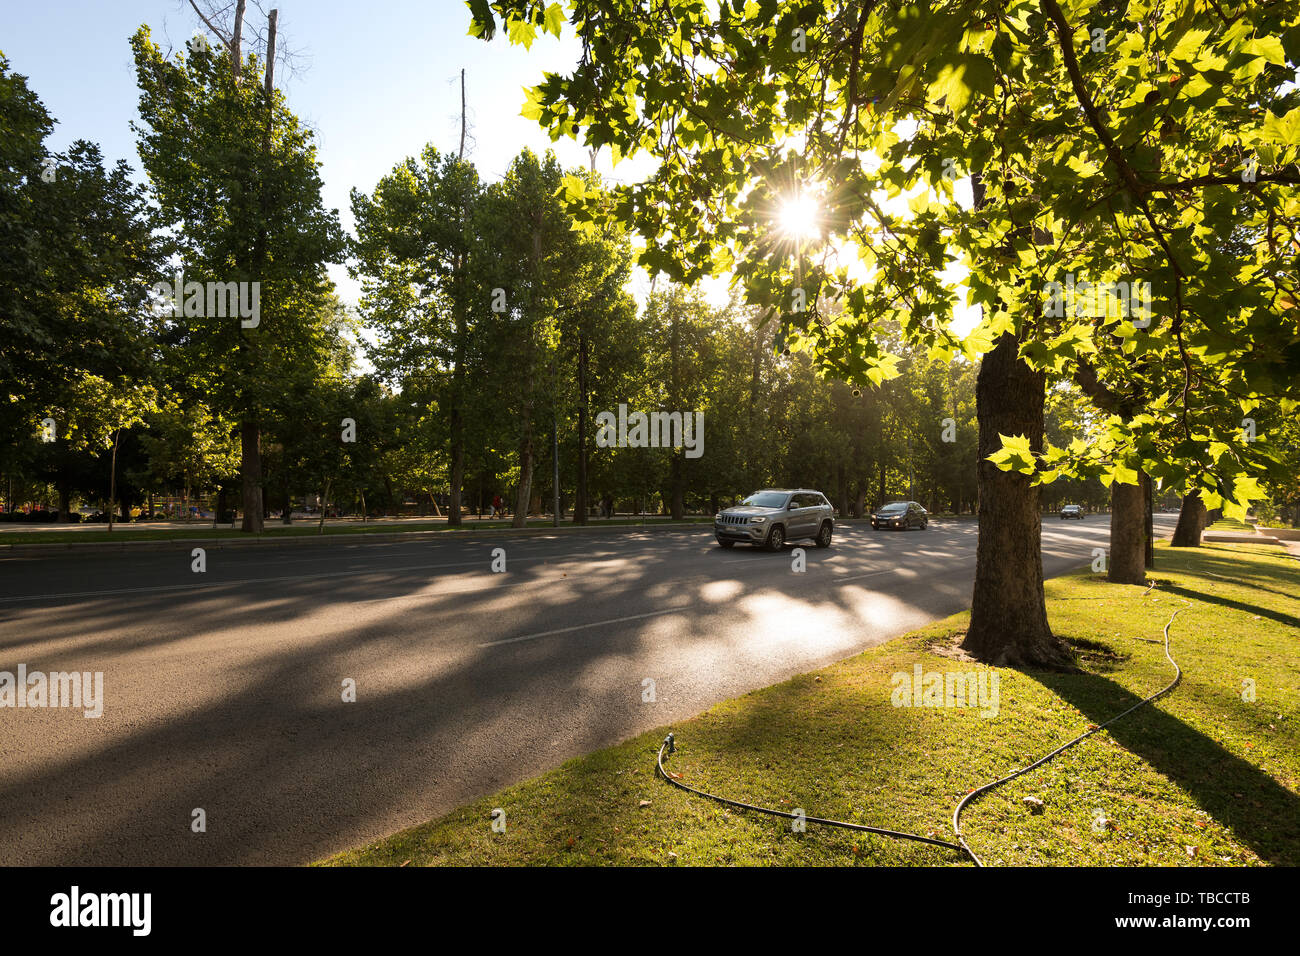 Santiago, Regione Metropolitana, Cile - il traffico nel Parco Forestal presso il centro cittadino con una impostazione sun. Foto Stock